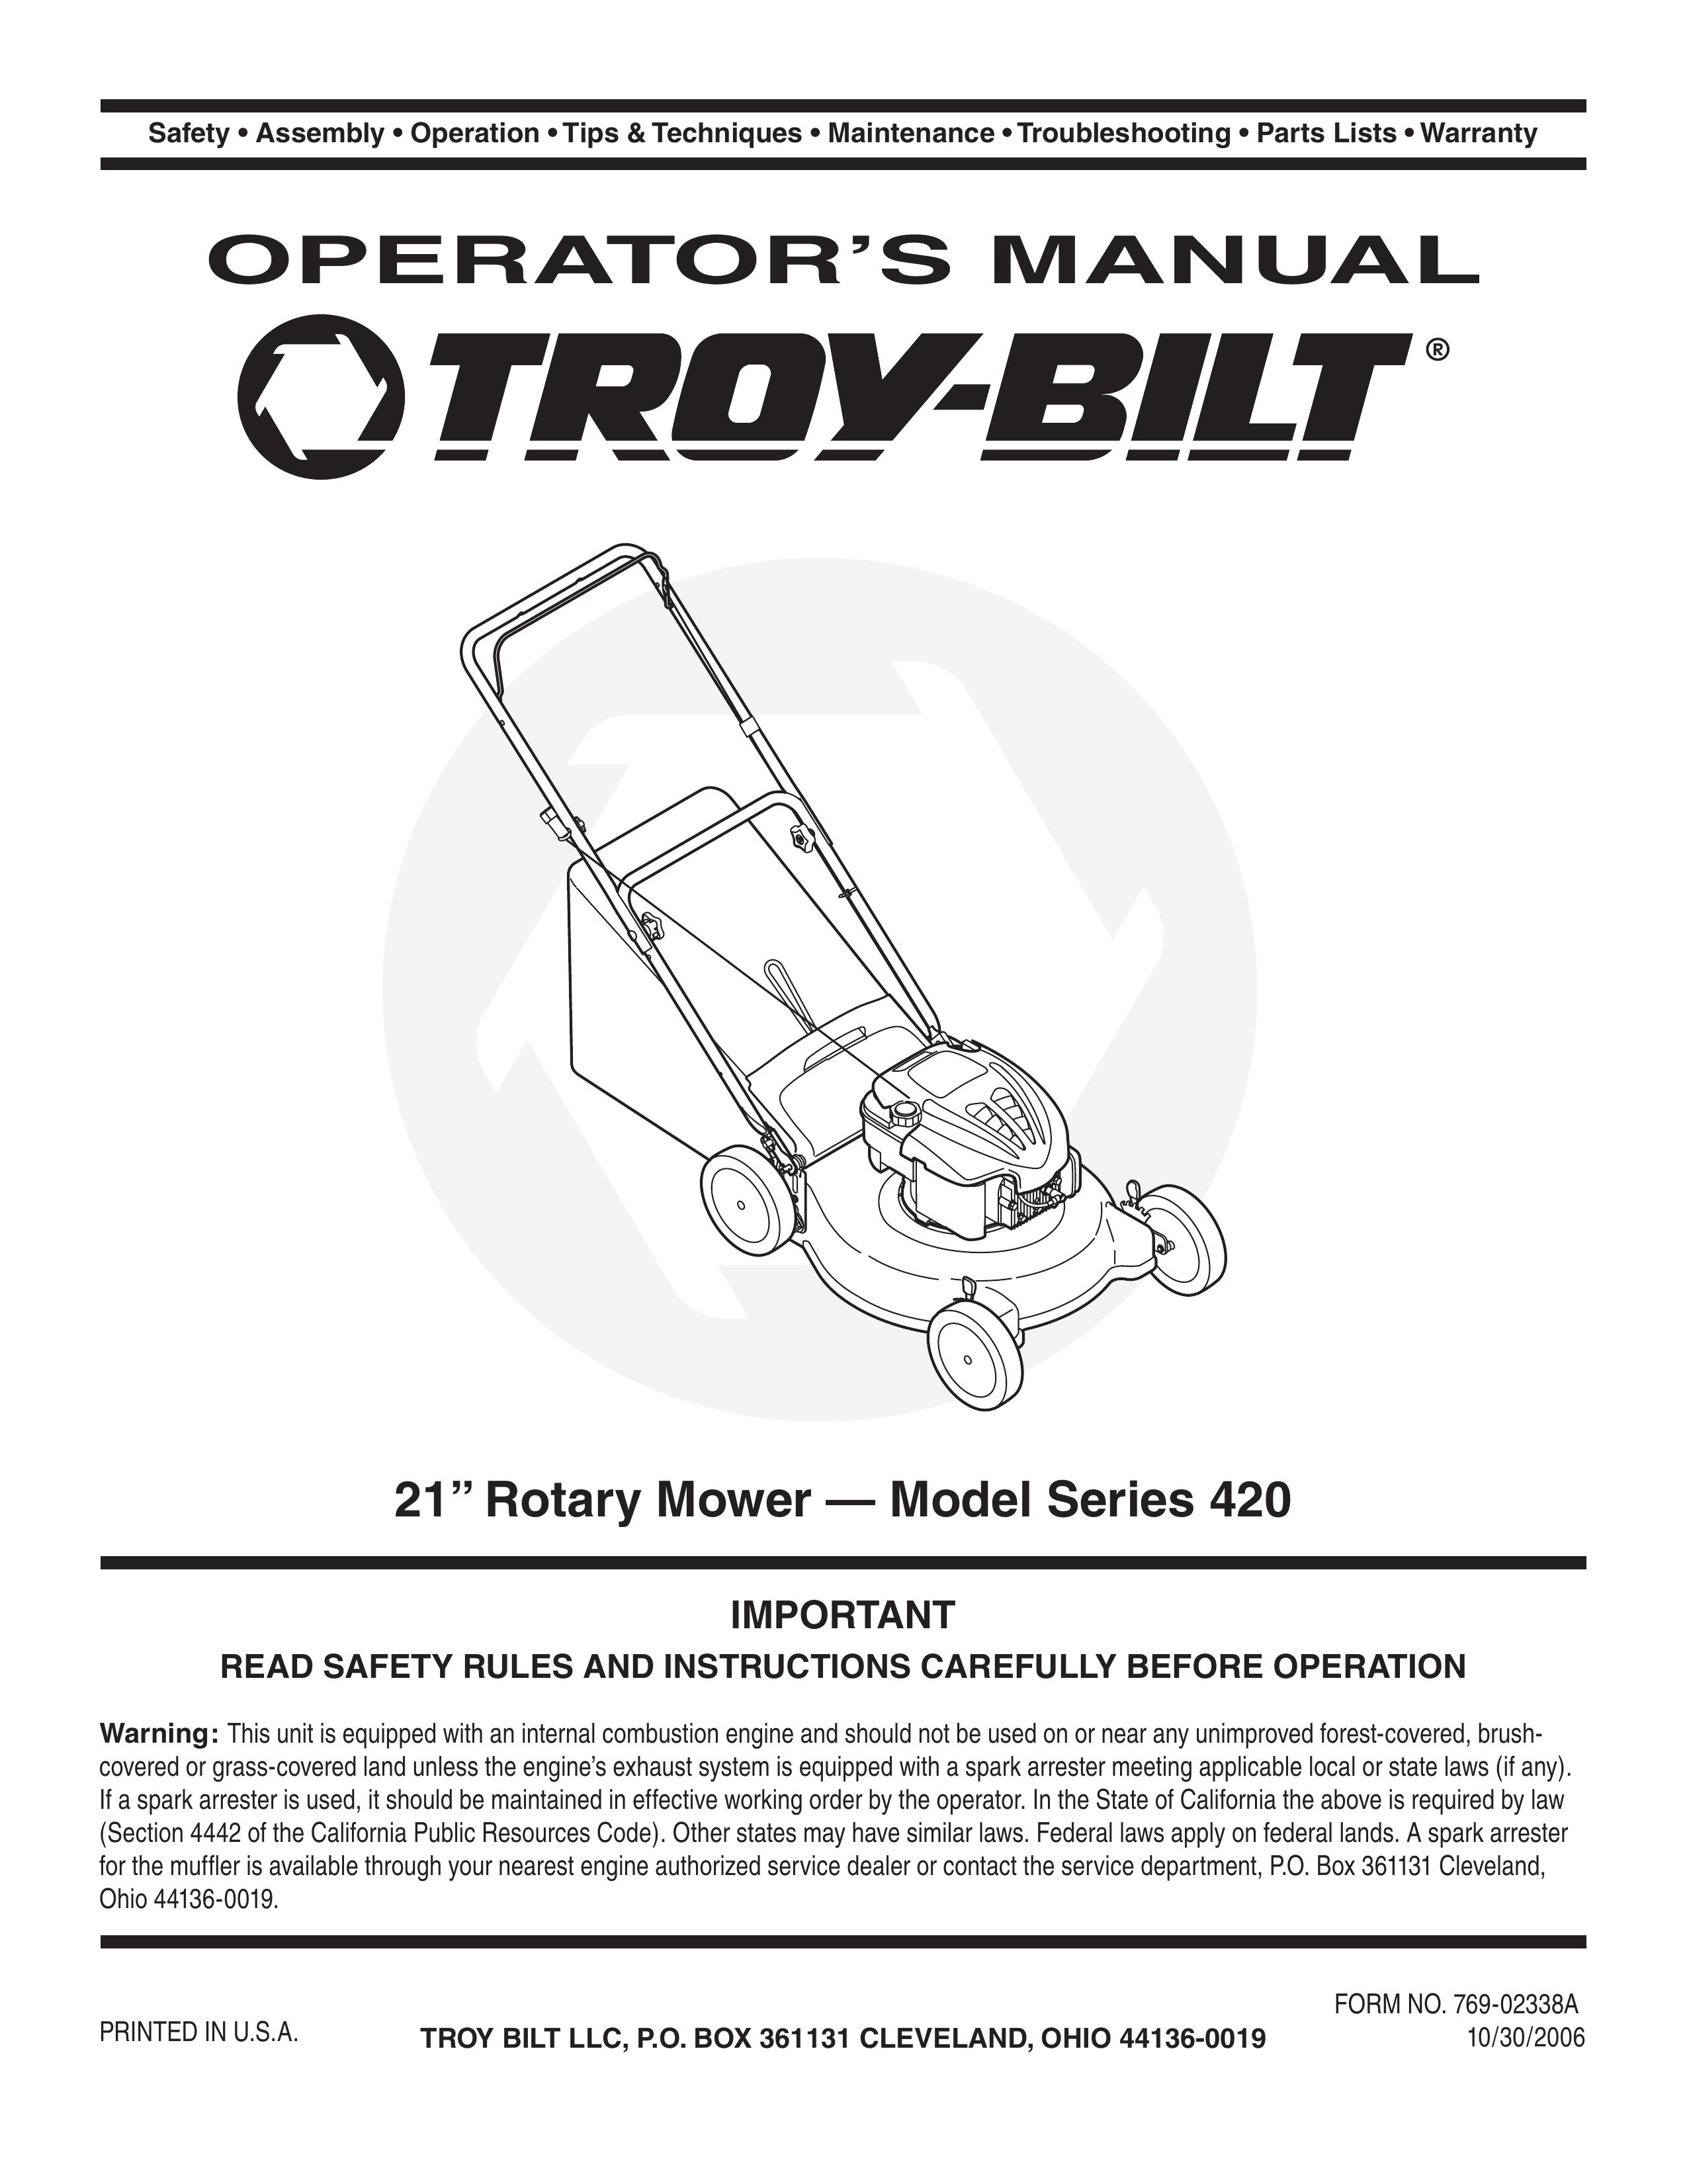 Troy-Bilt 420 Lawn Mower User Manual